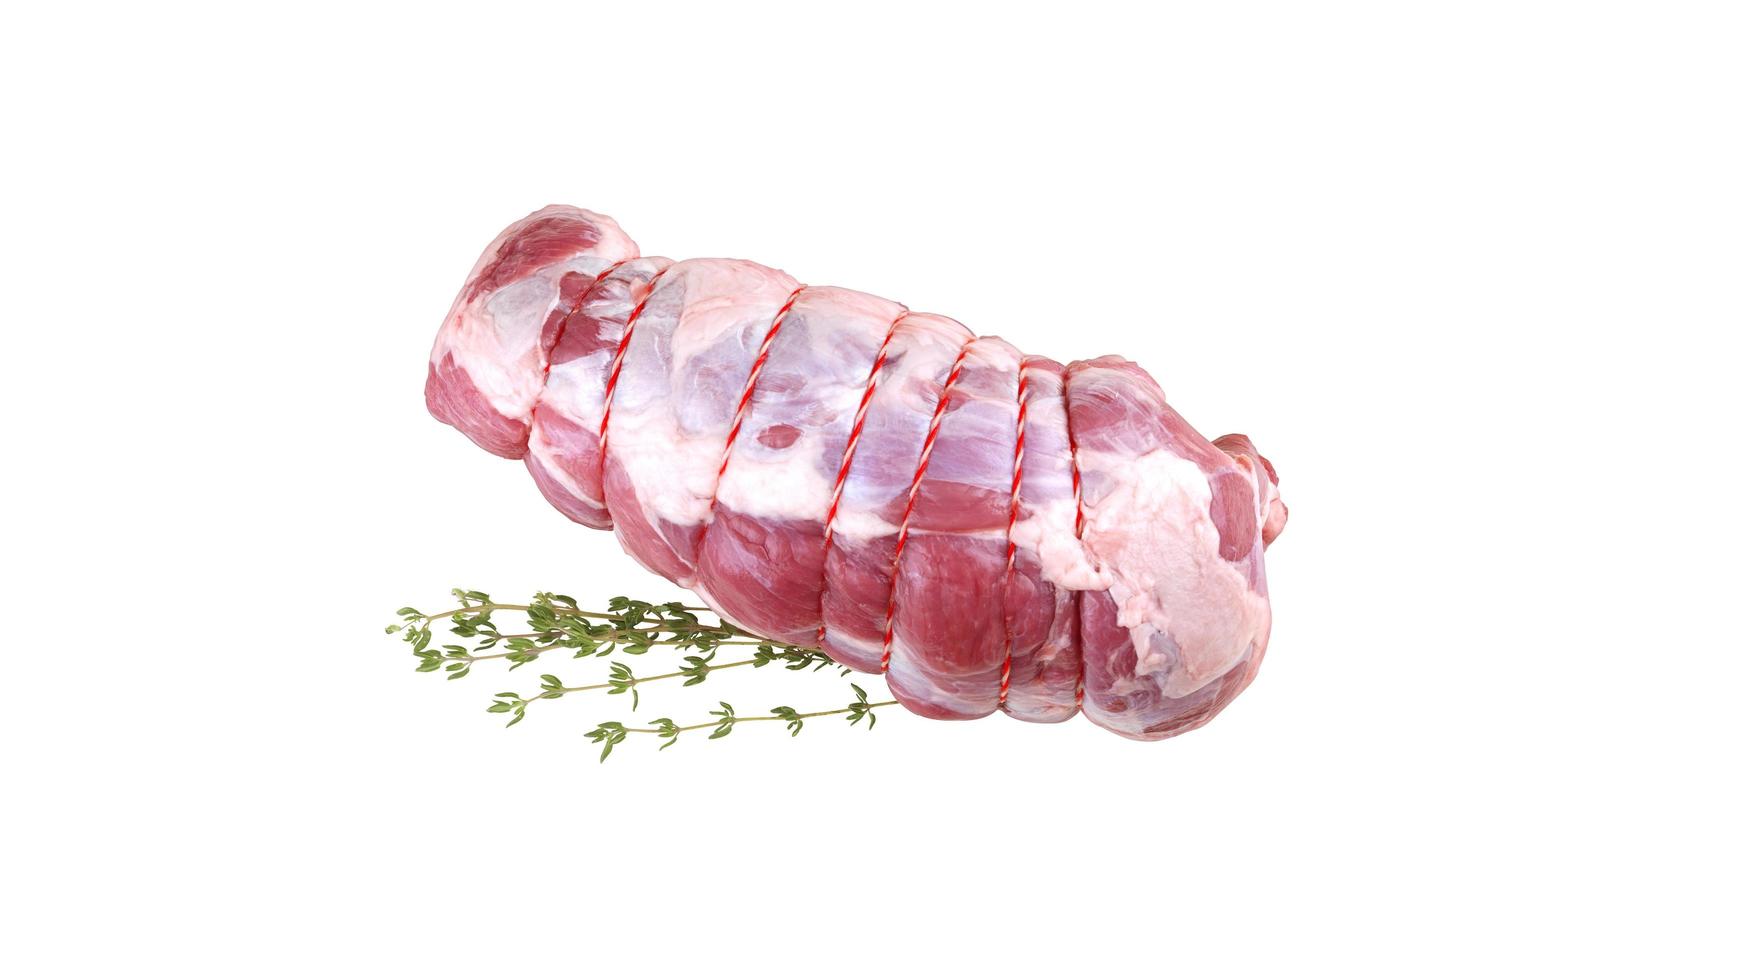 Viande de porc fraîche crue isolée sur fond blanc photo